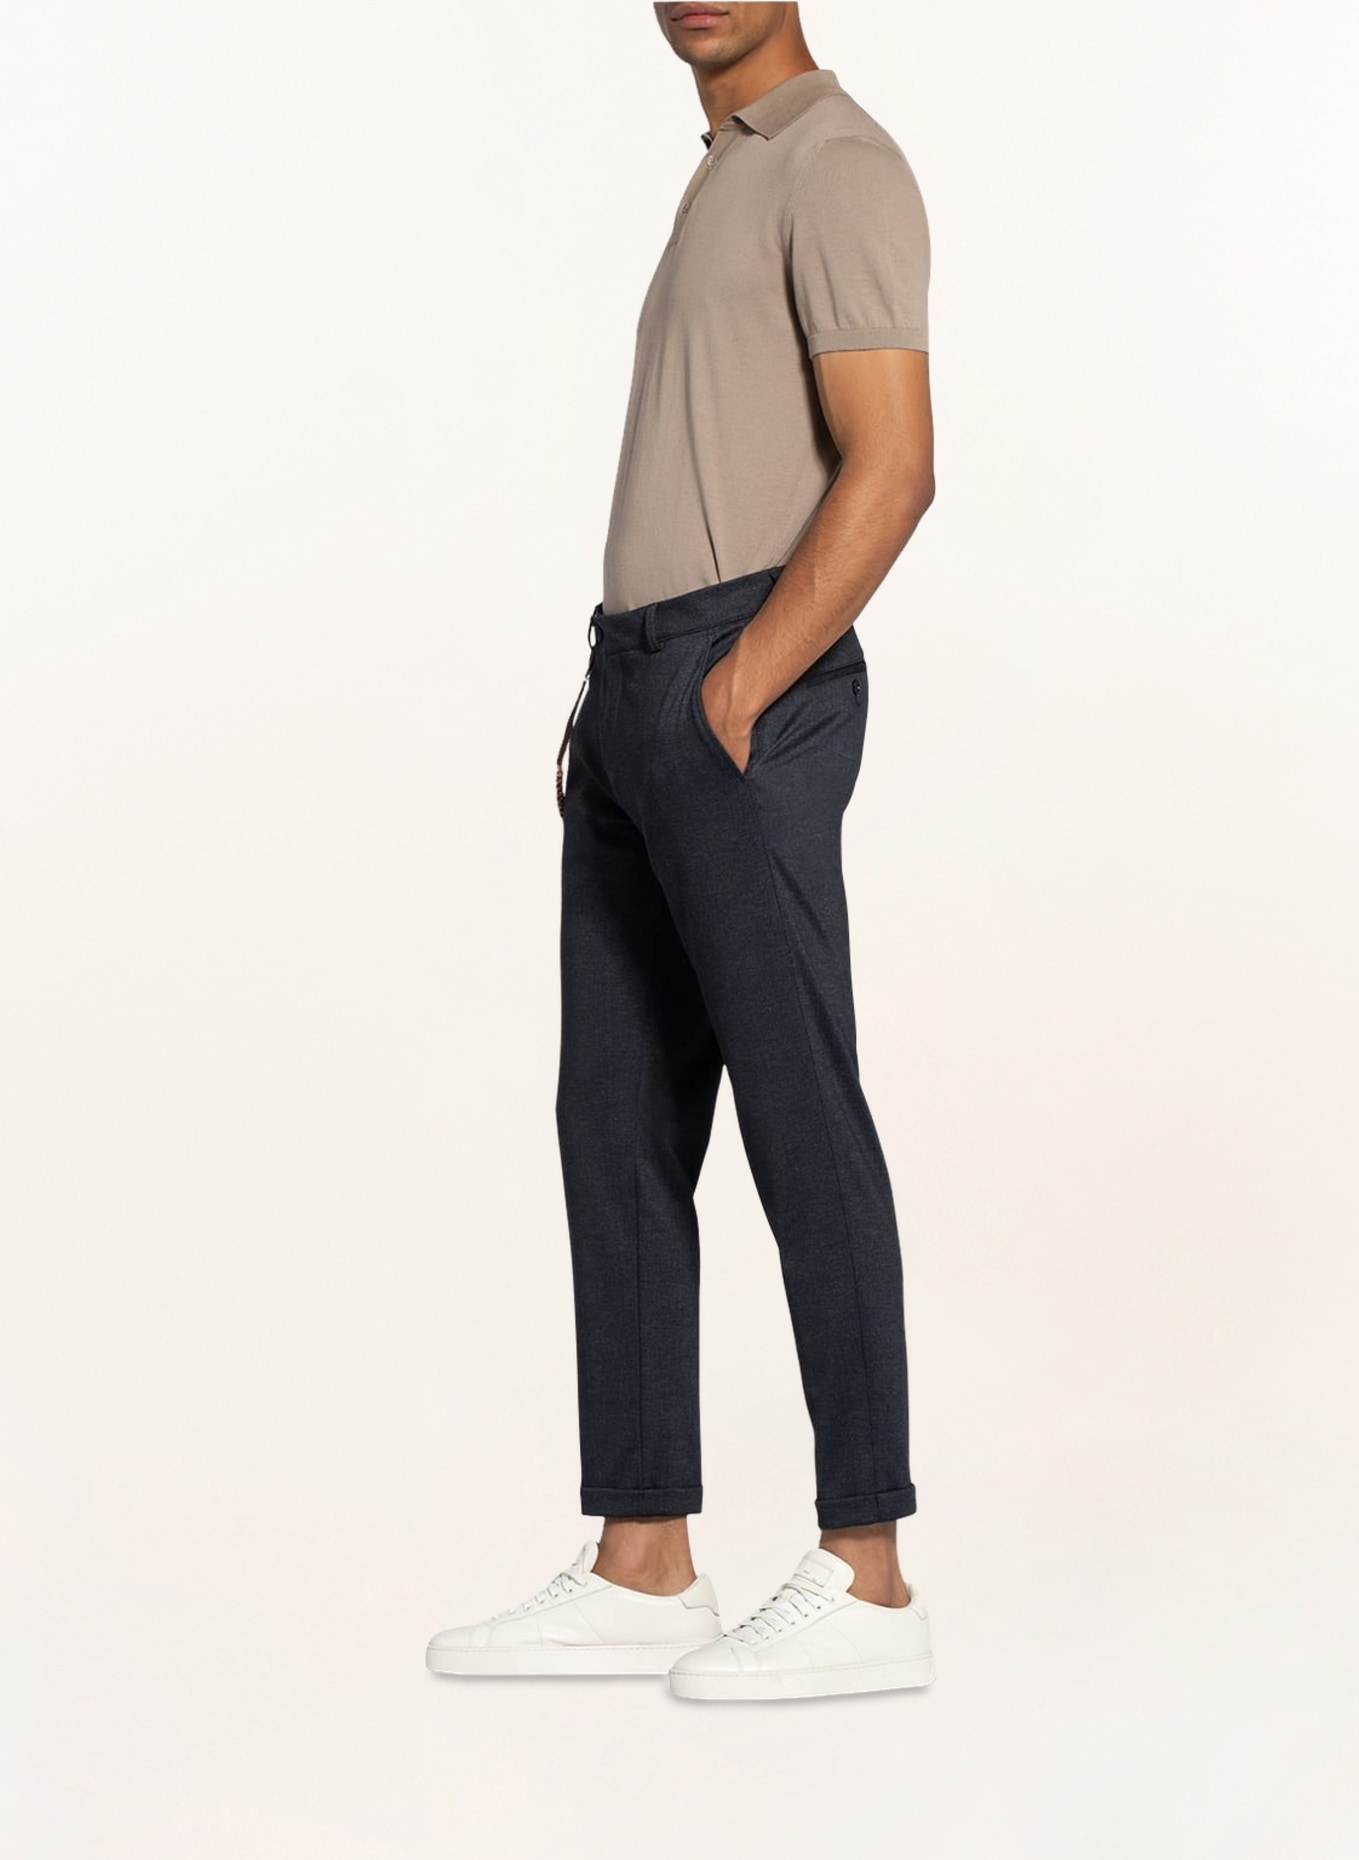 CG - CLUB of GENTS Suit trousers CONN Super slim fit, Color: 63 BLAU DUNKEL (Image 5)